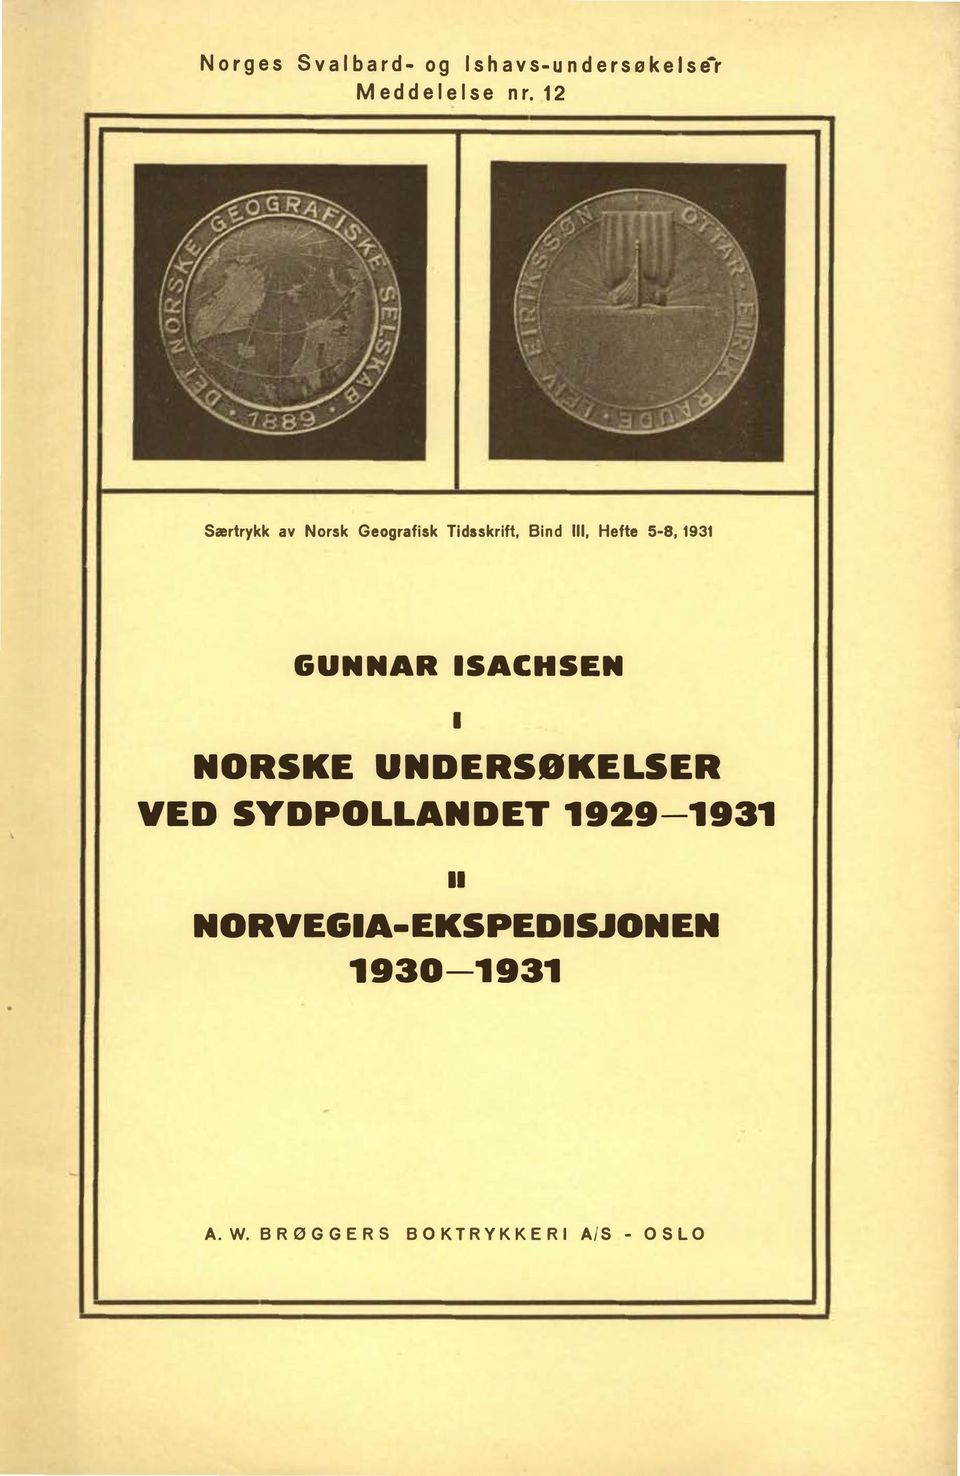 12 Særtrykk av Norsk Geografisk Tidsskrift, Bind Ill, Hefte 5-8, 1931